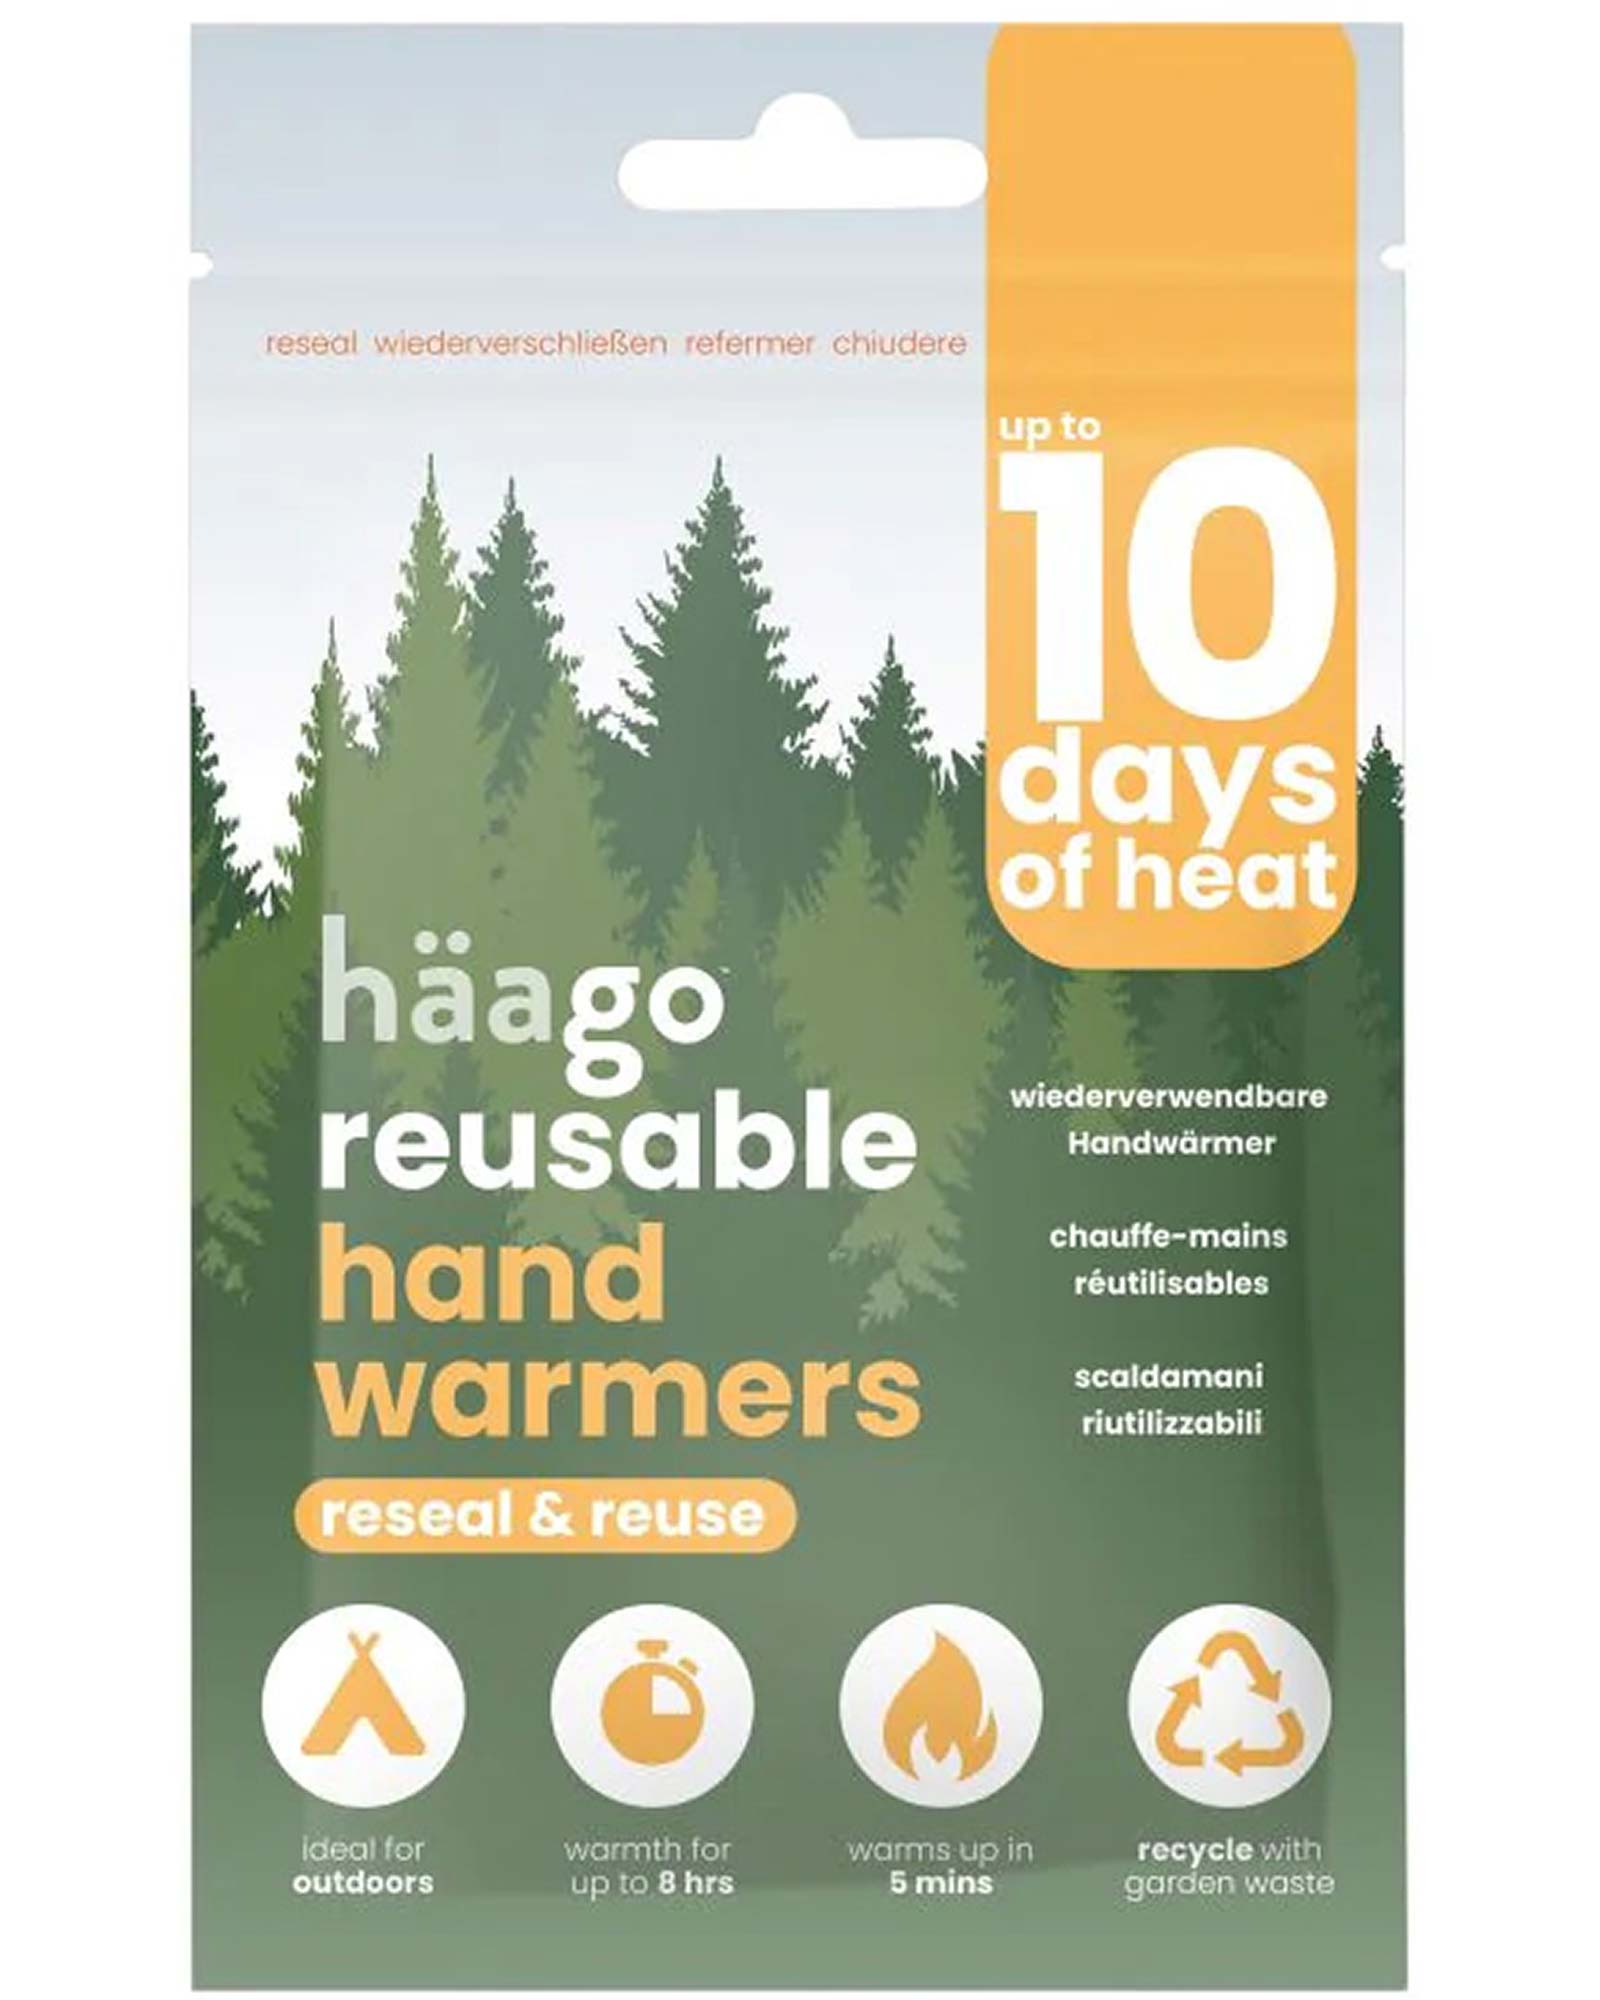 Haago Reusable Hand Warmers